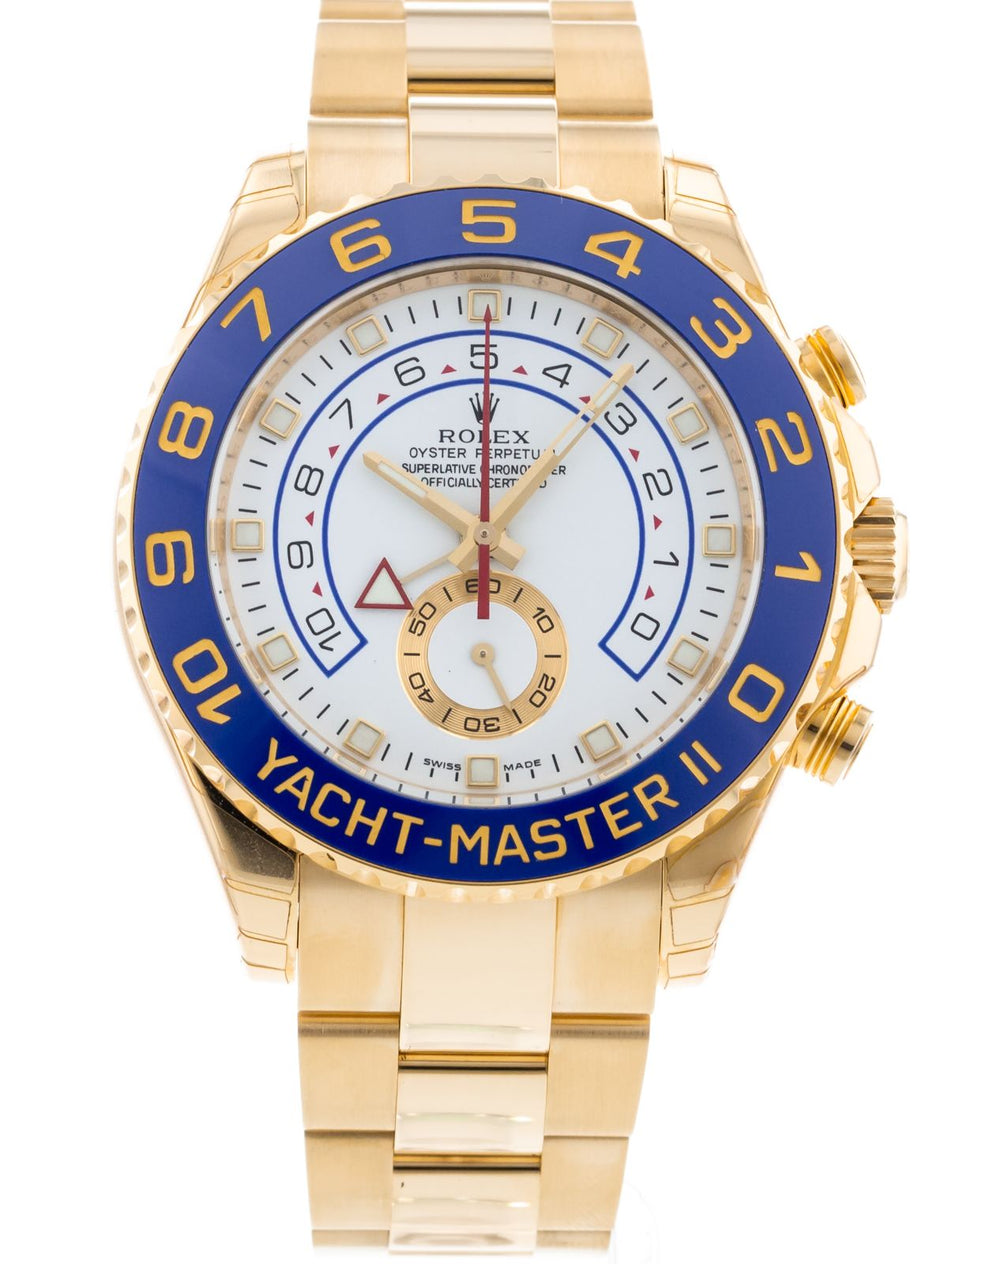 Rolex Yacht-Master II 116688 1